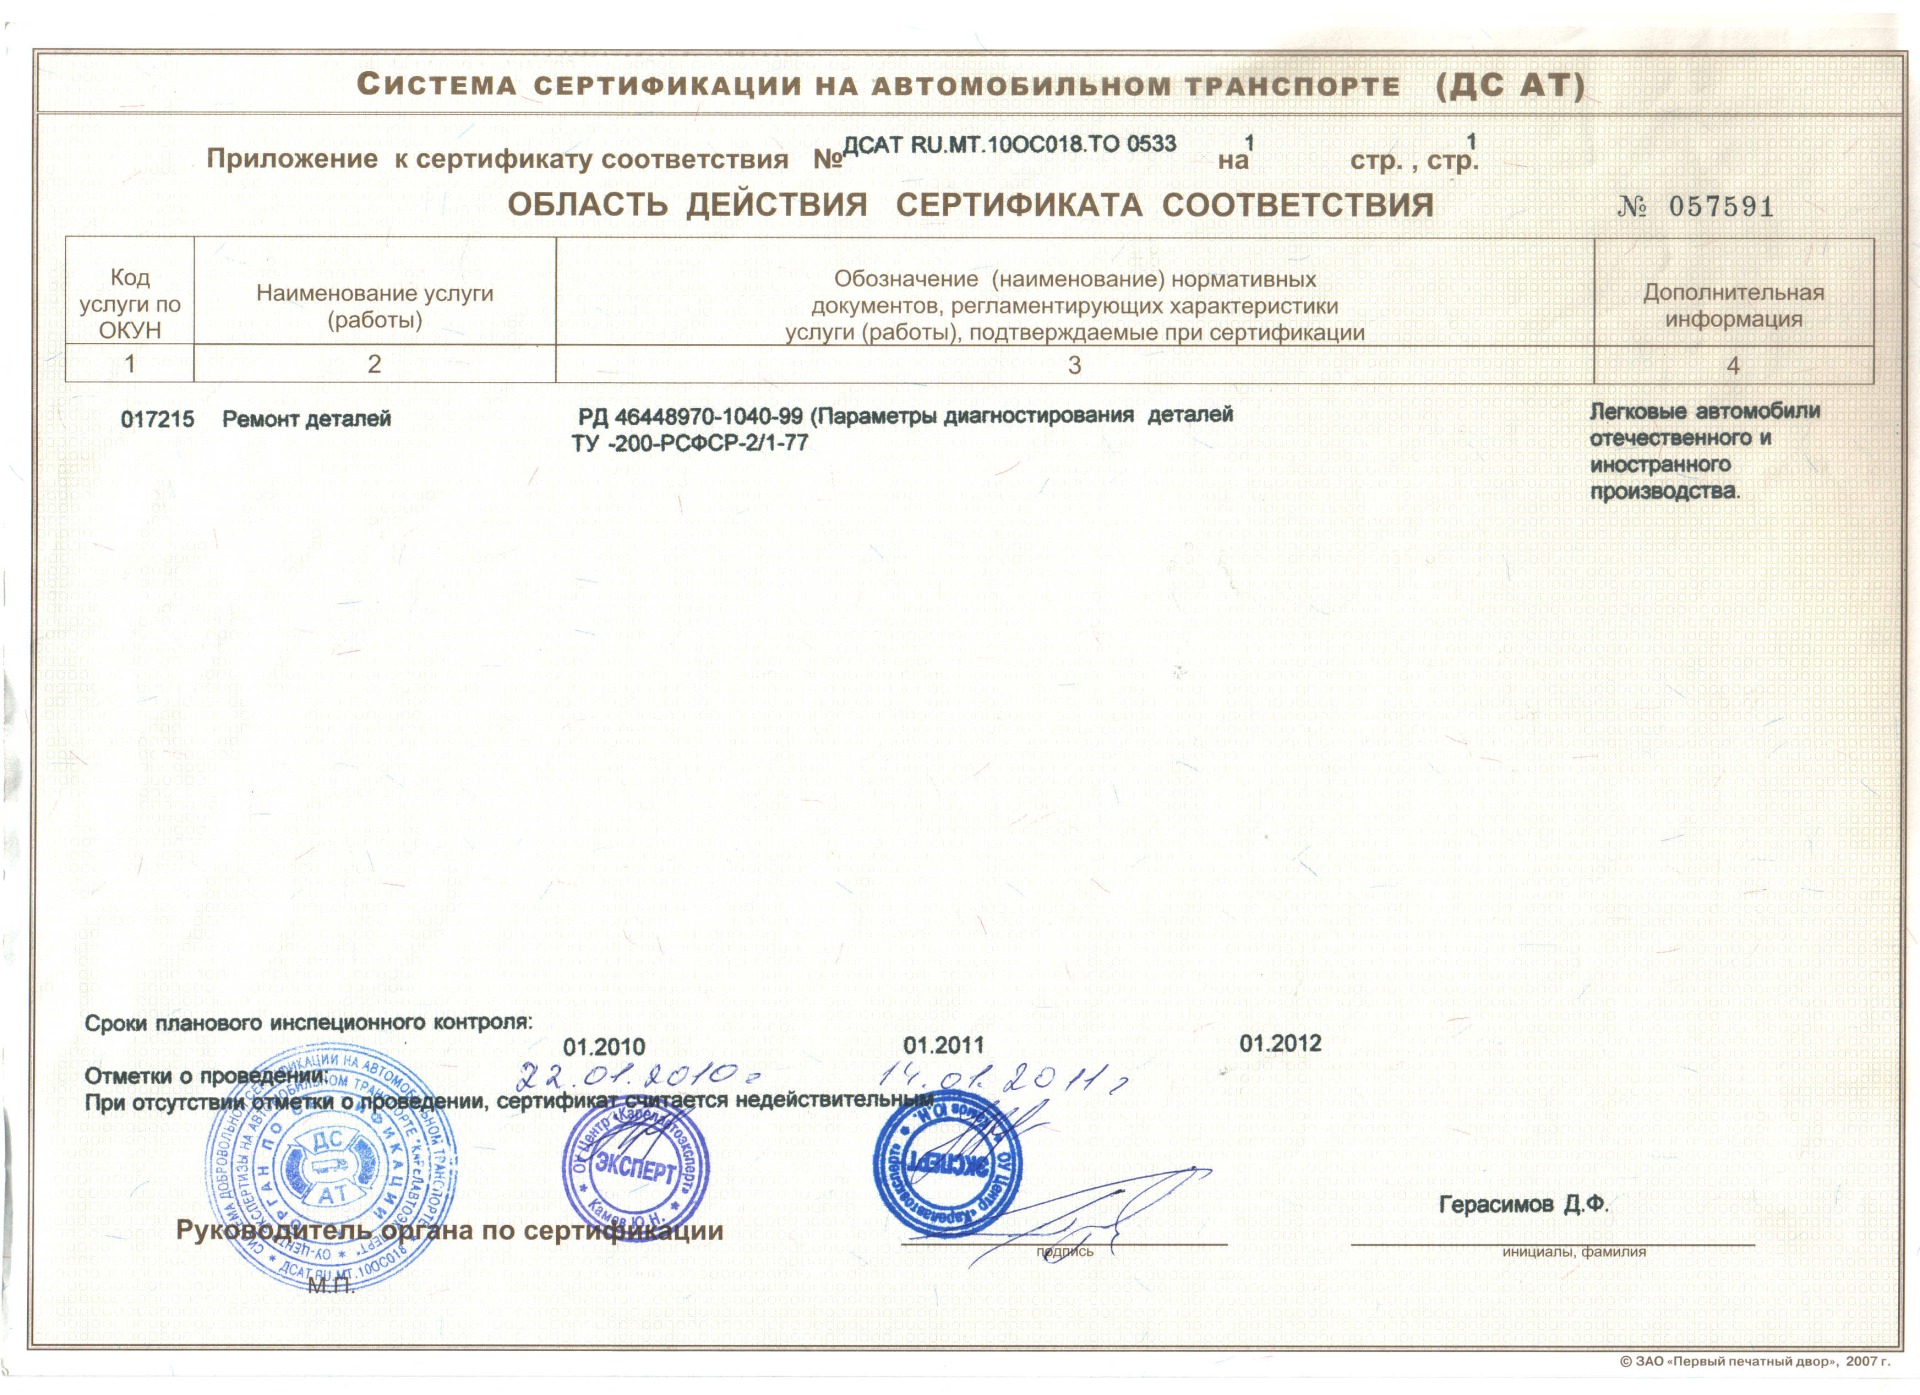 Ремонт дигателей и агрегатов Лекс Мотром Петрохаводск сертификат